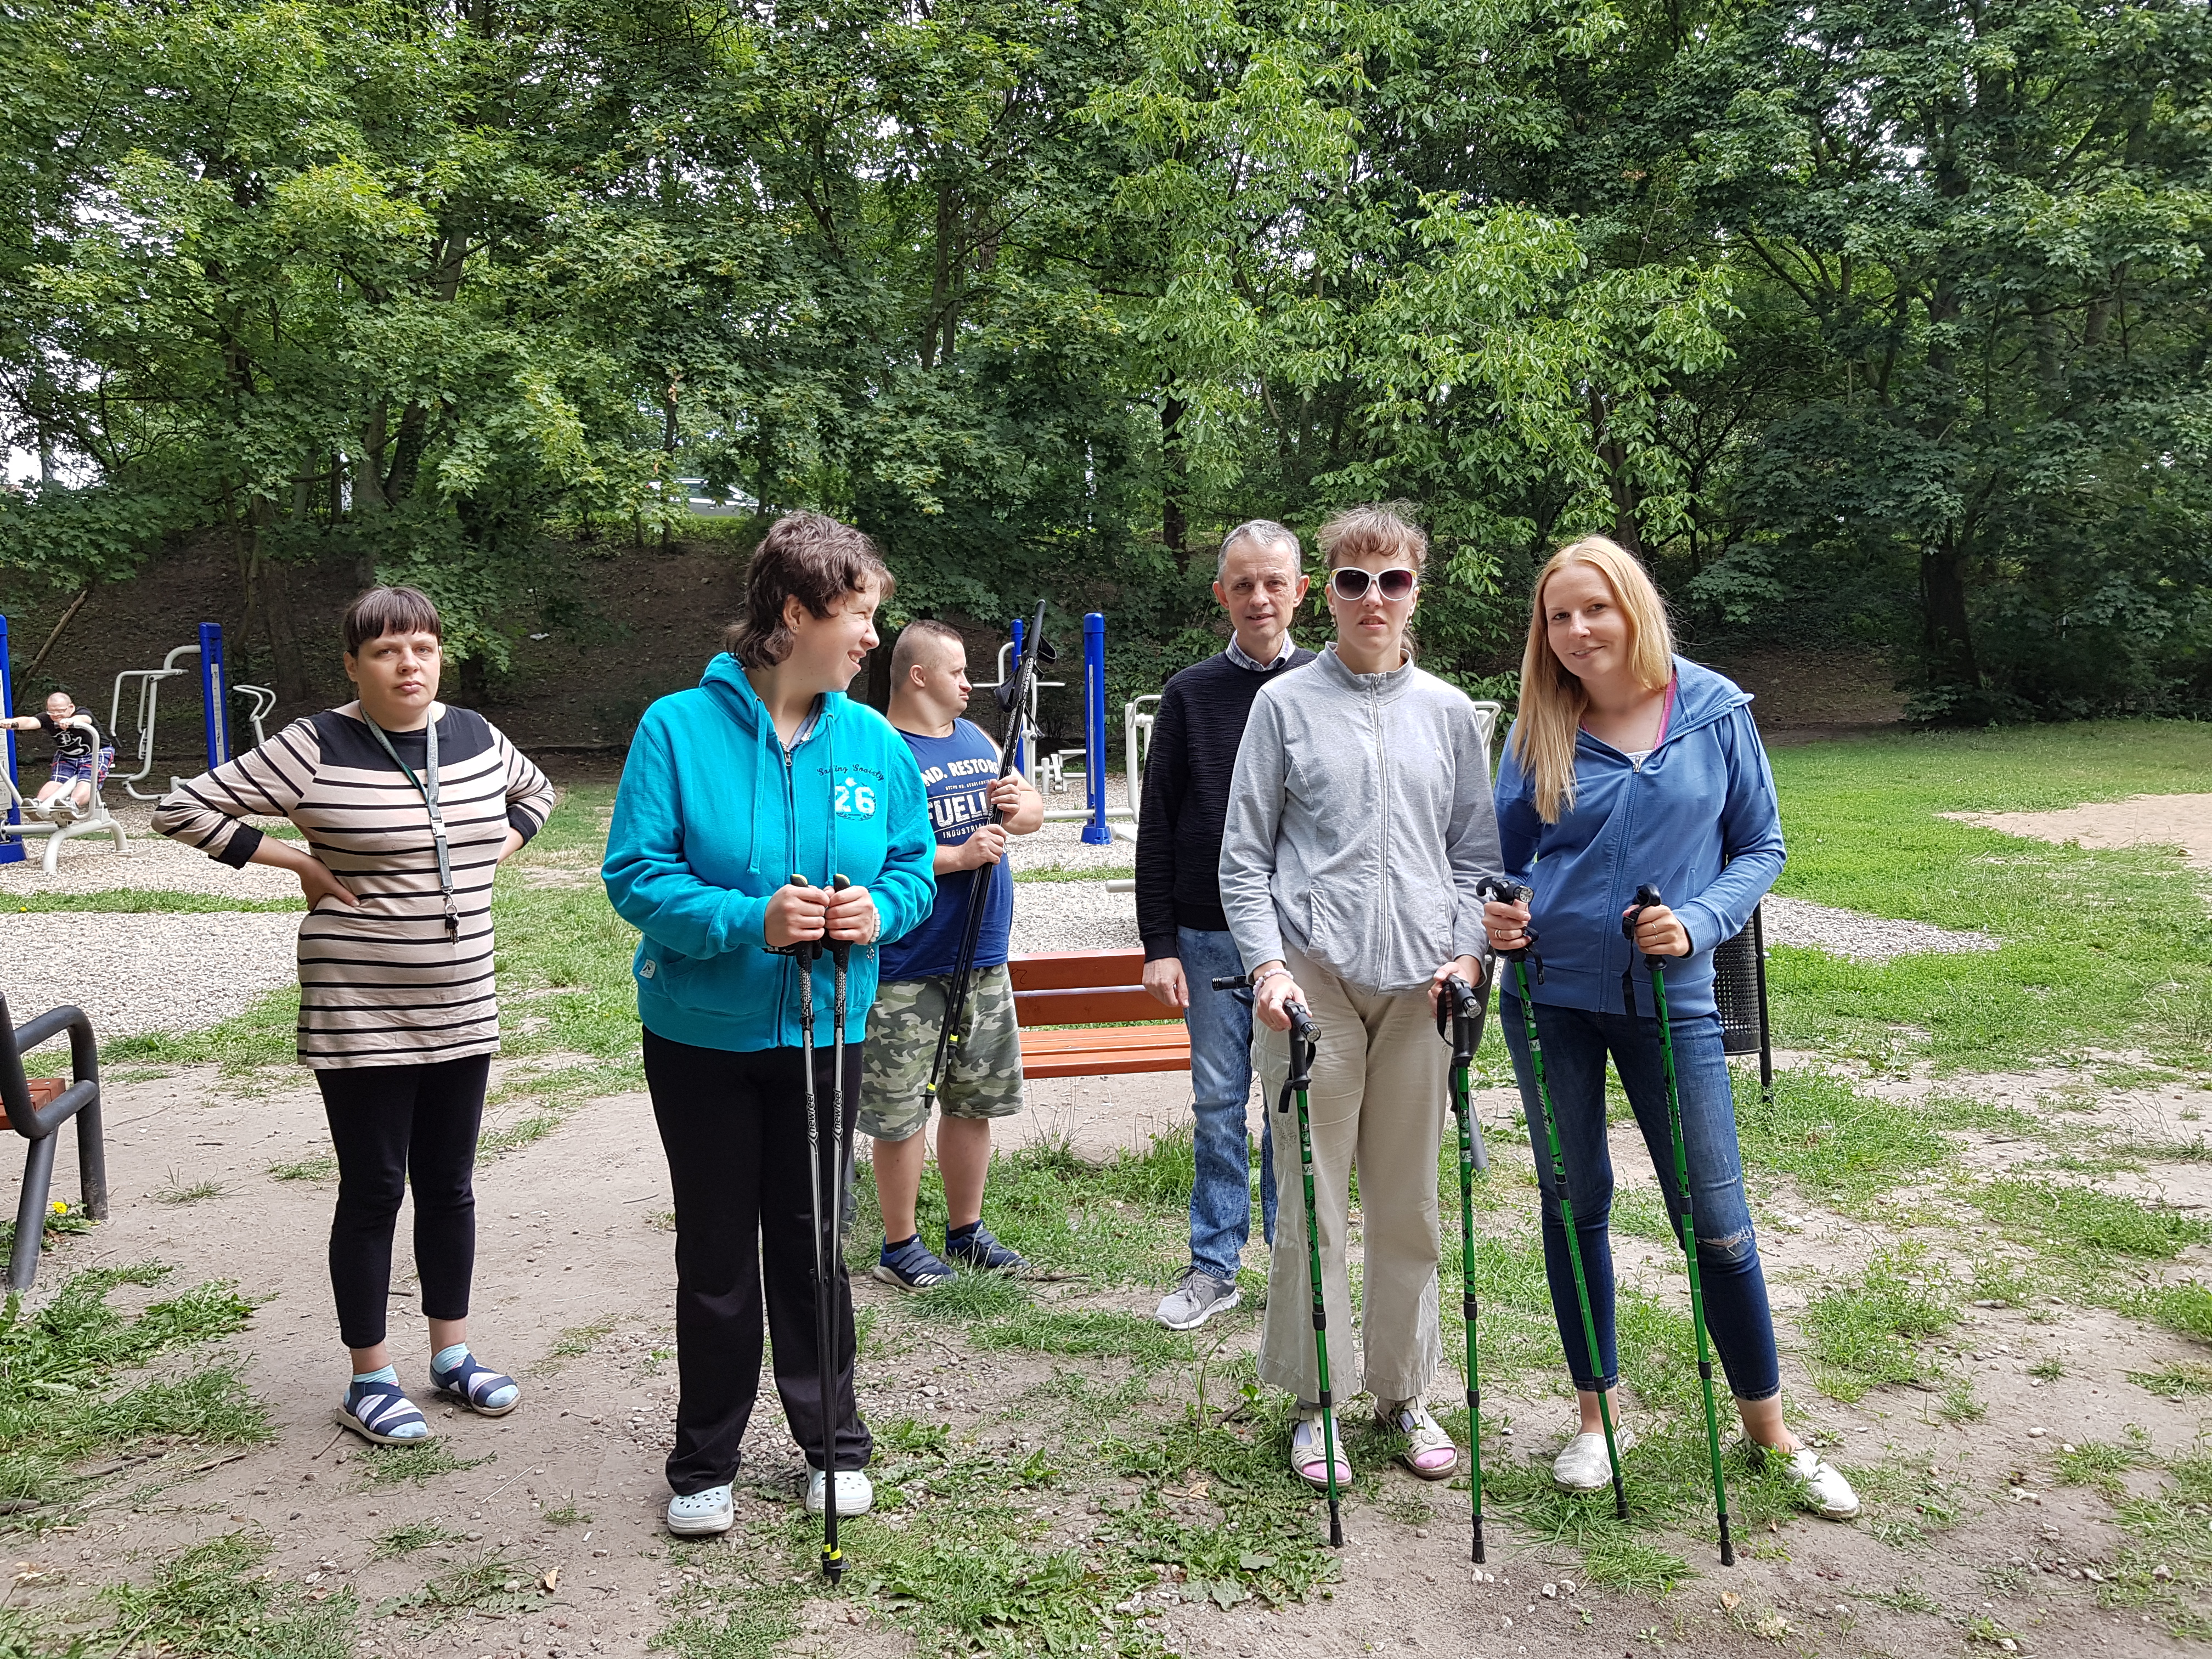 Pięciu uczestników wraz z terapeutką stoją w parku. W rękach trzymają kije do nordic walking. 